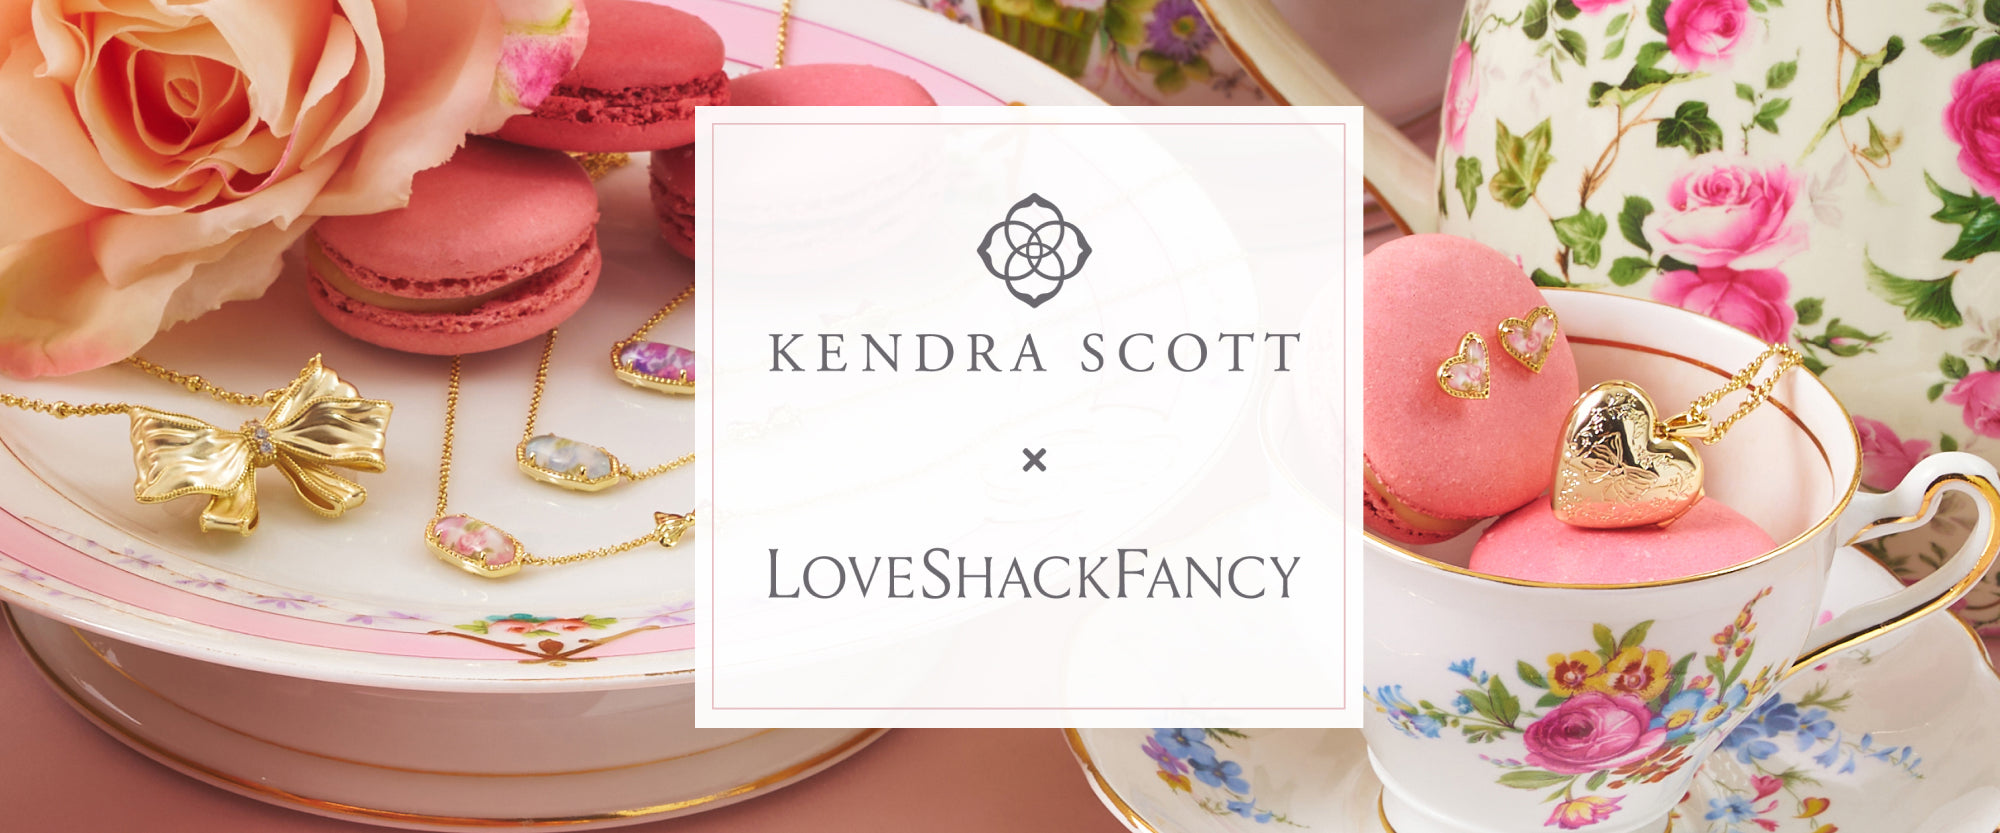 Kendra Scott x LoveShackFancy jewelry collection